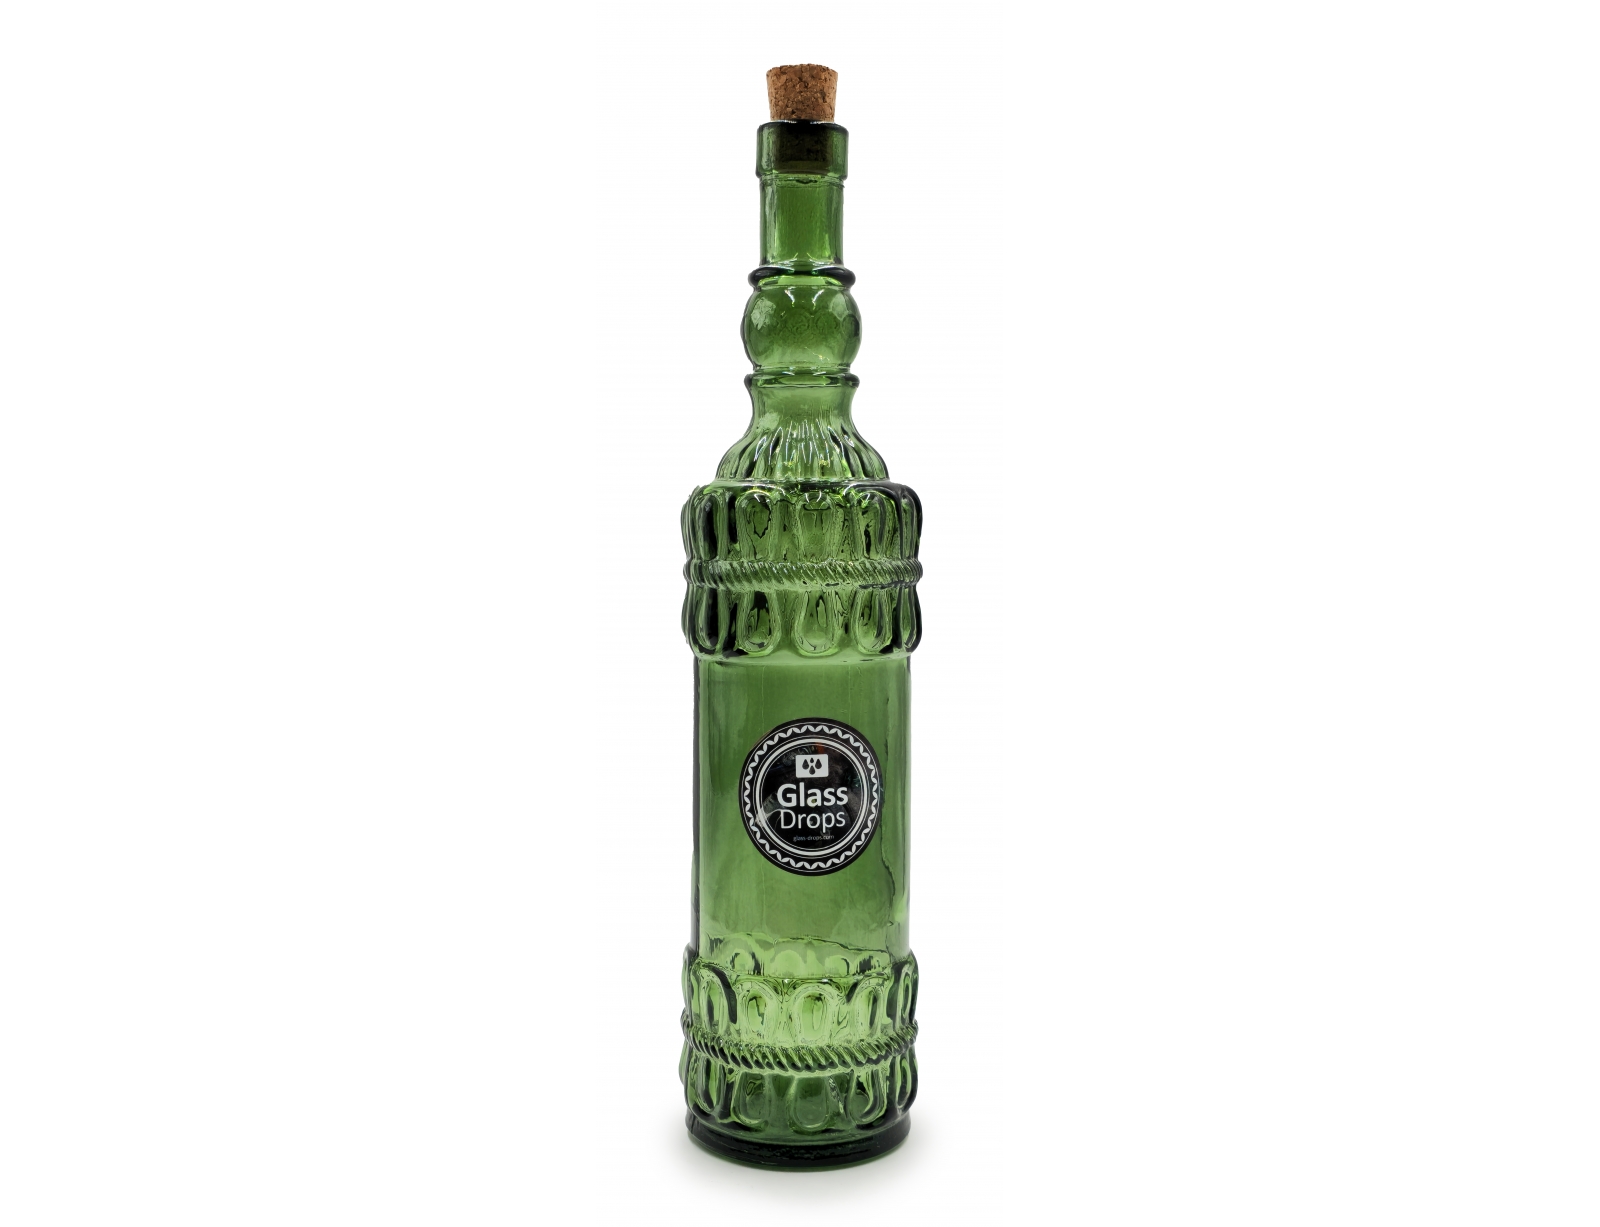 Εικόνα Διακοσμητικό Μπουκάλι με πώμα Glass Drops Lazos (5043DB622) Aπό 100% ανακυκλωμένο γυαλί, Xωρητικότητας 700ml, Διαστάσεων Ø 8 x Υ 34 cm, Οld Green